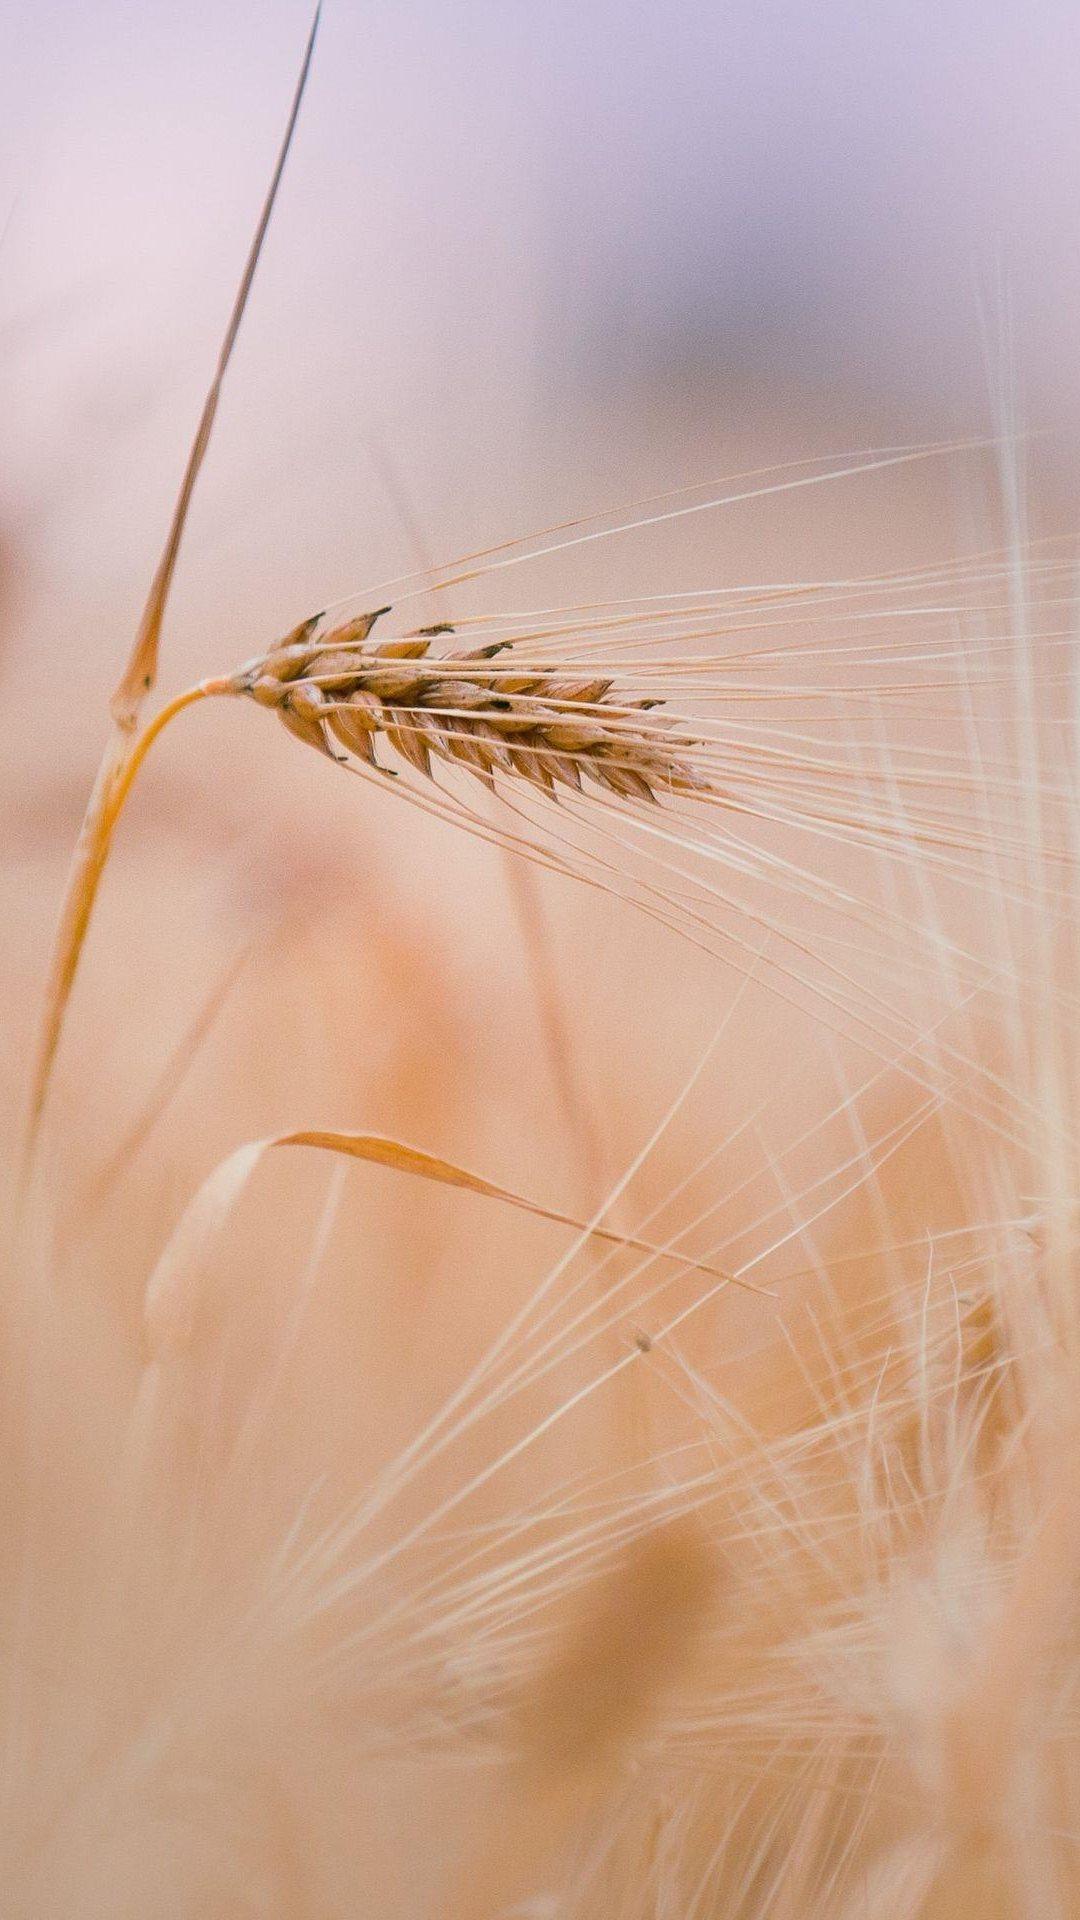 Wheat In Field iPhone6 Wallpaper